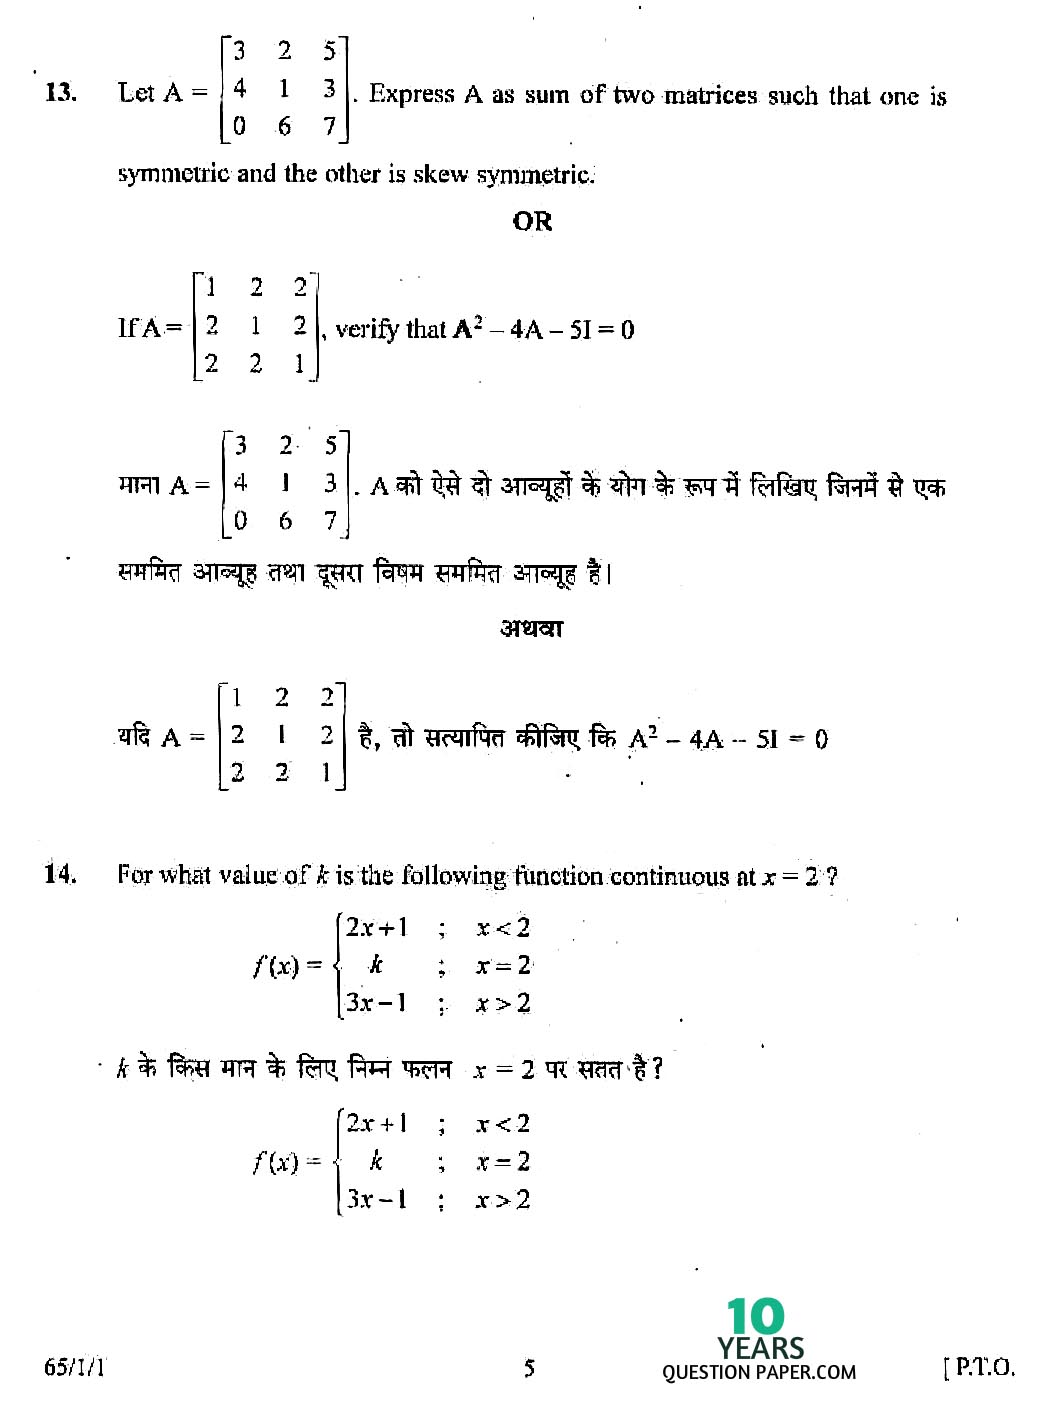 CBSE Class 12 Mathematics 2008 Question Paper